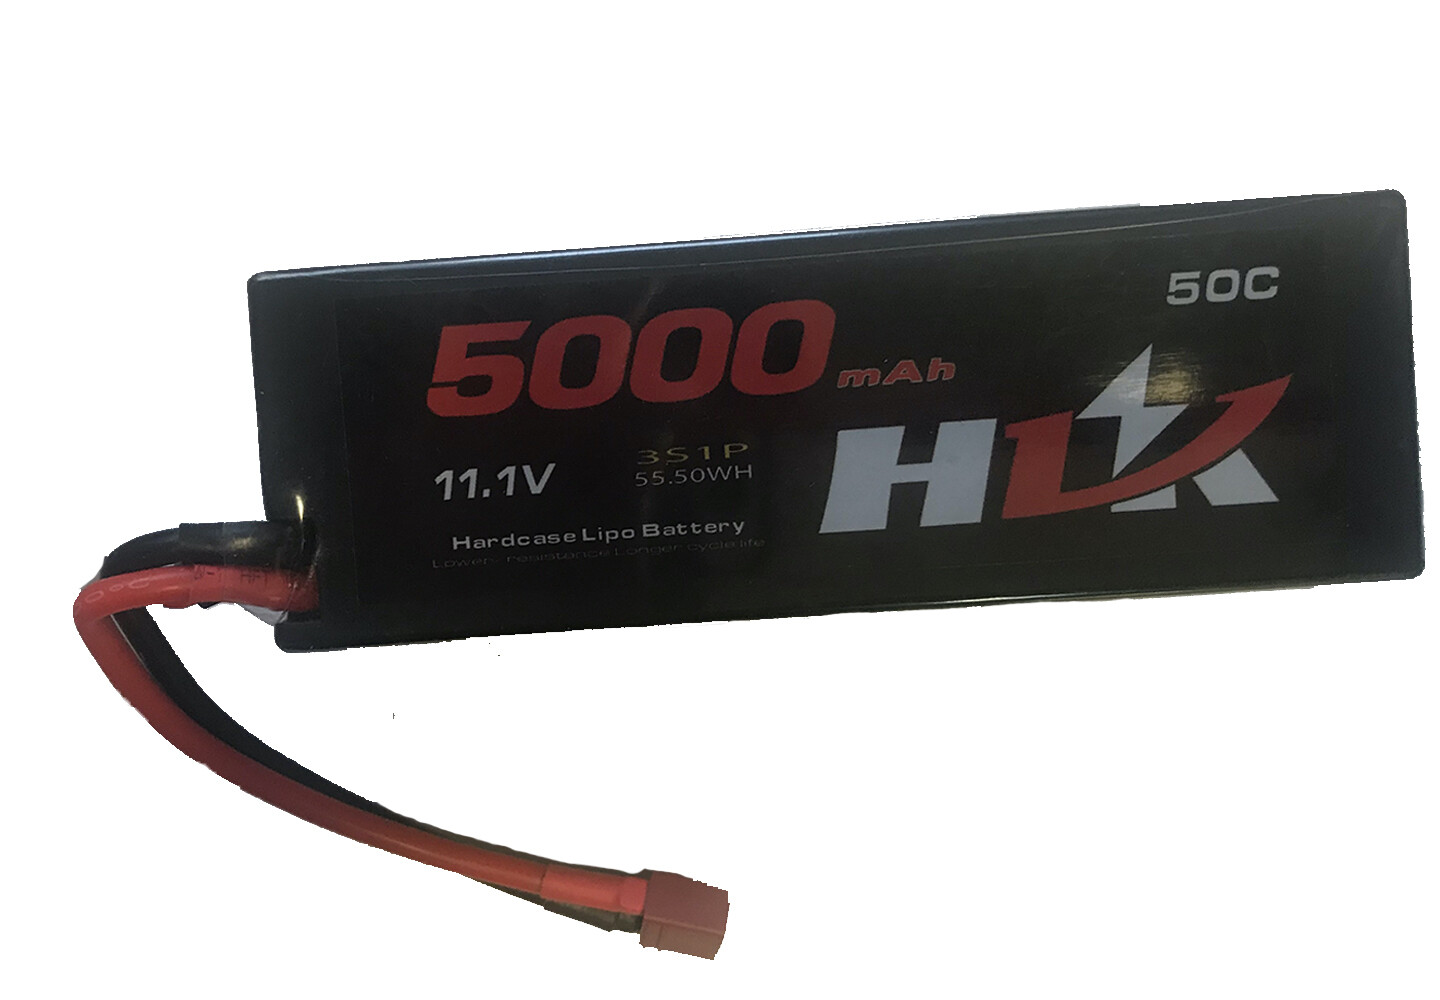 HIJ 11.1v, 50C Lipo Battery 5000